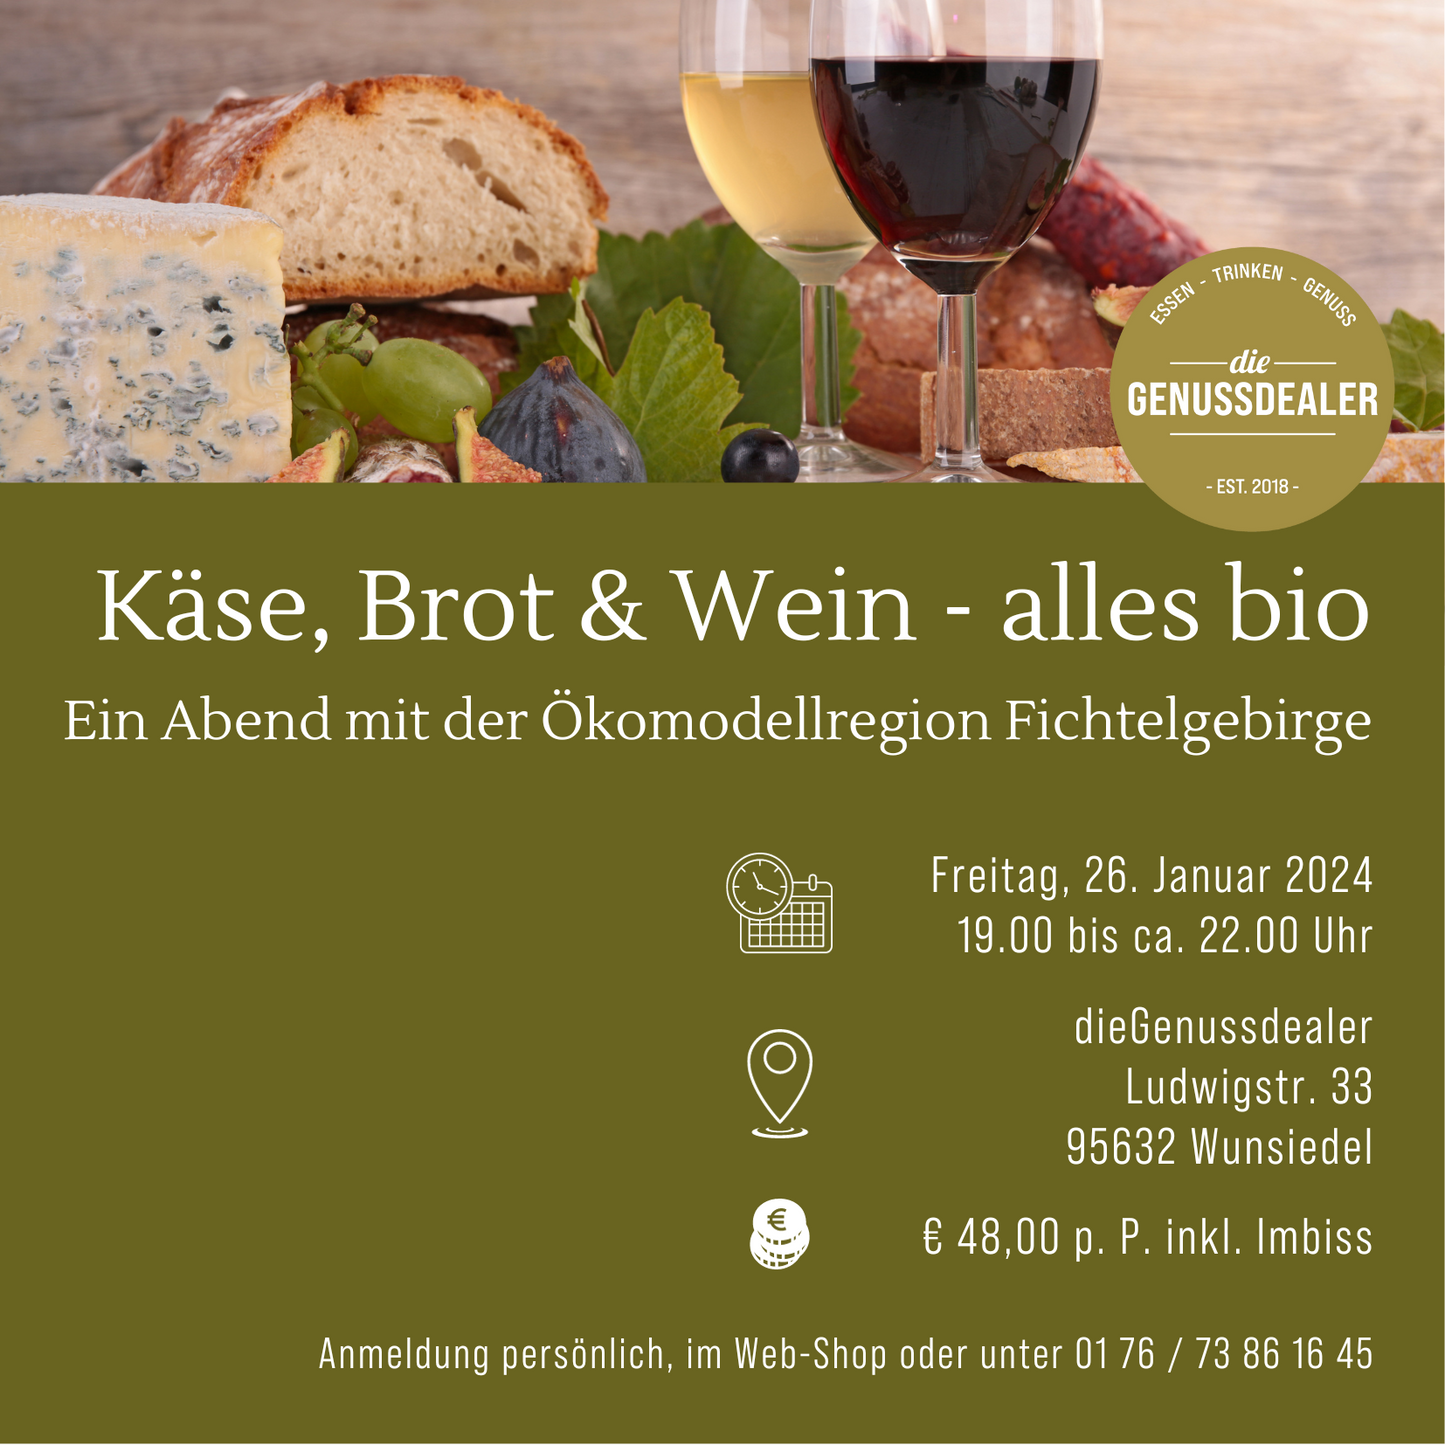 Käse, Brot & Wein - alles bio am 26.01.24